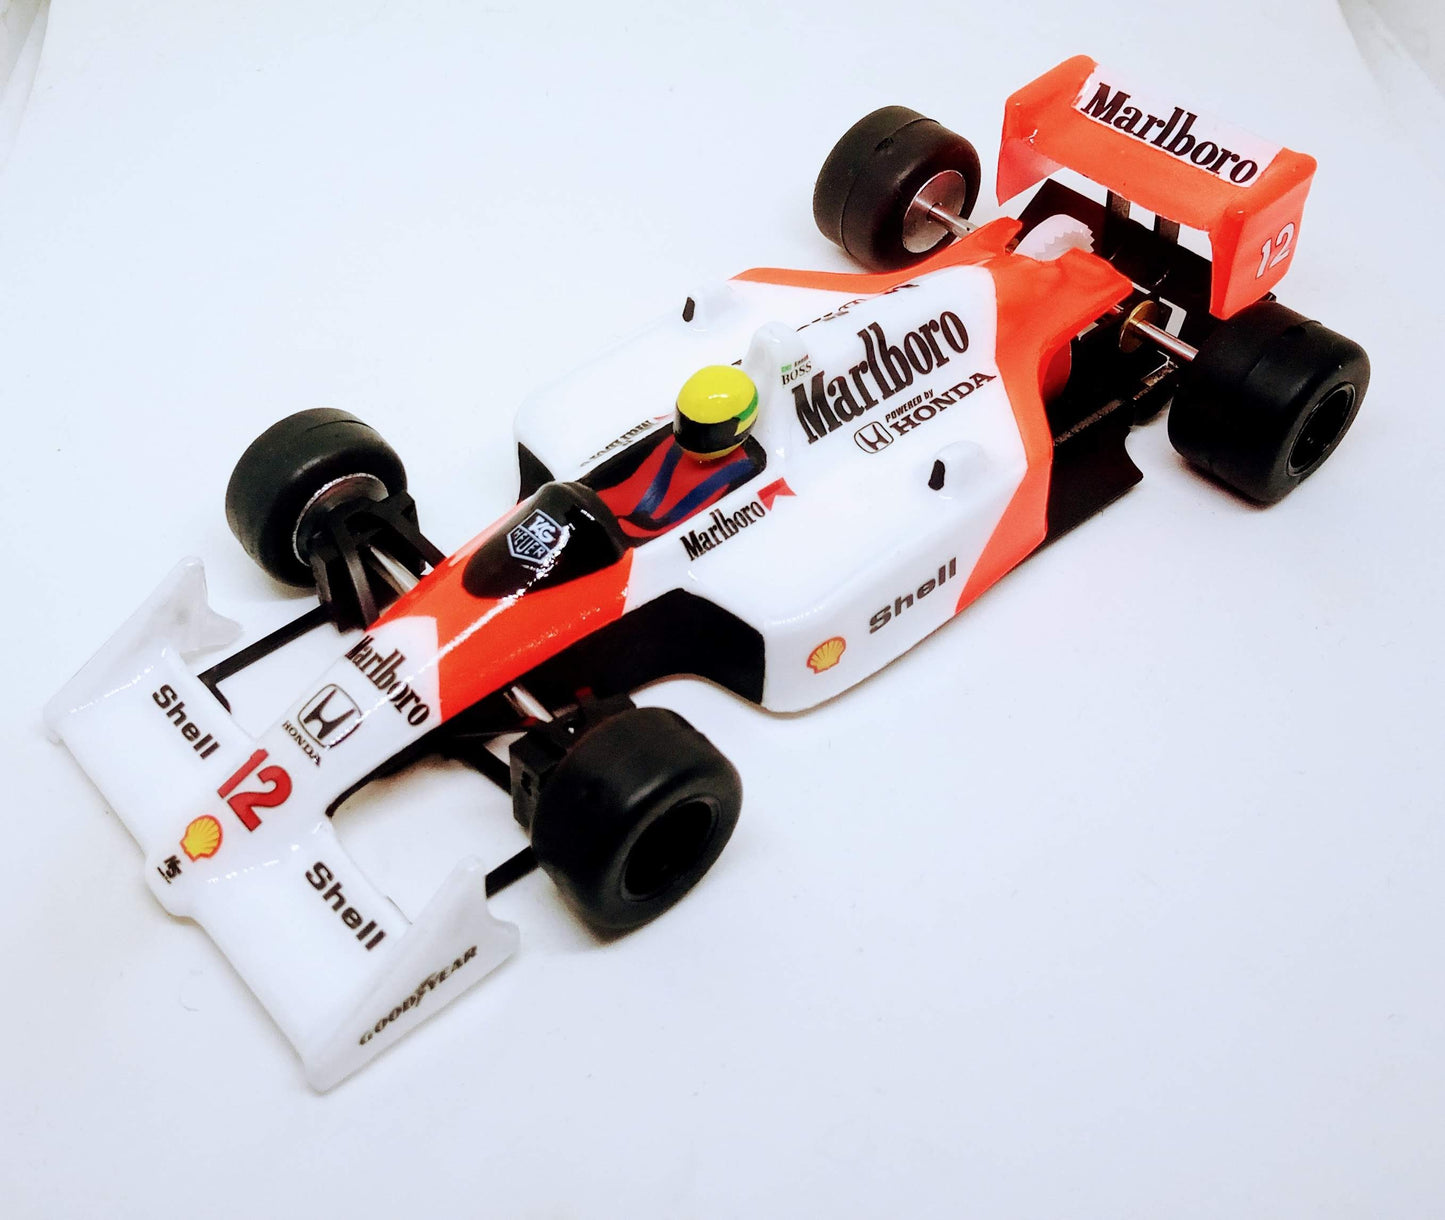 McLaren MP4/4 Ayrton Senna